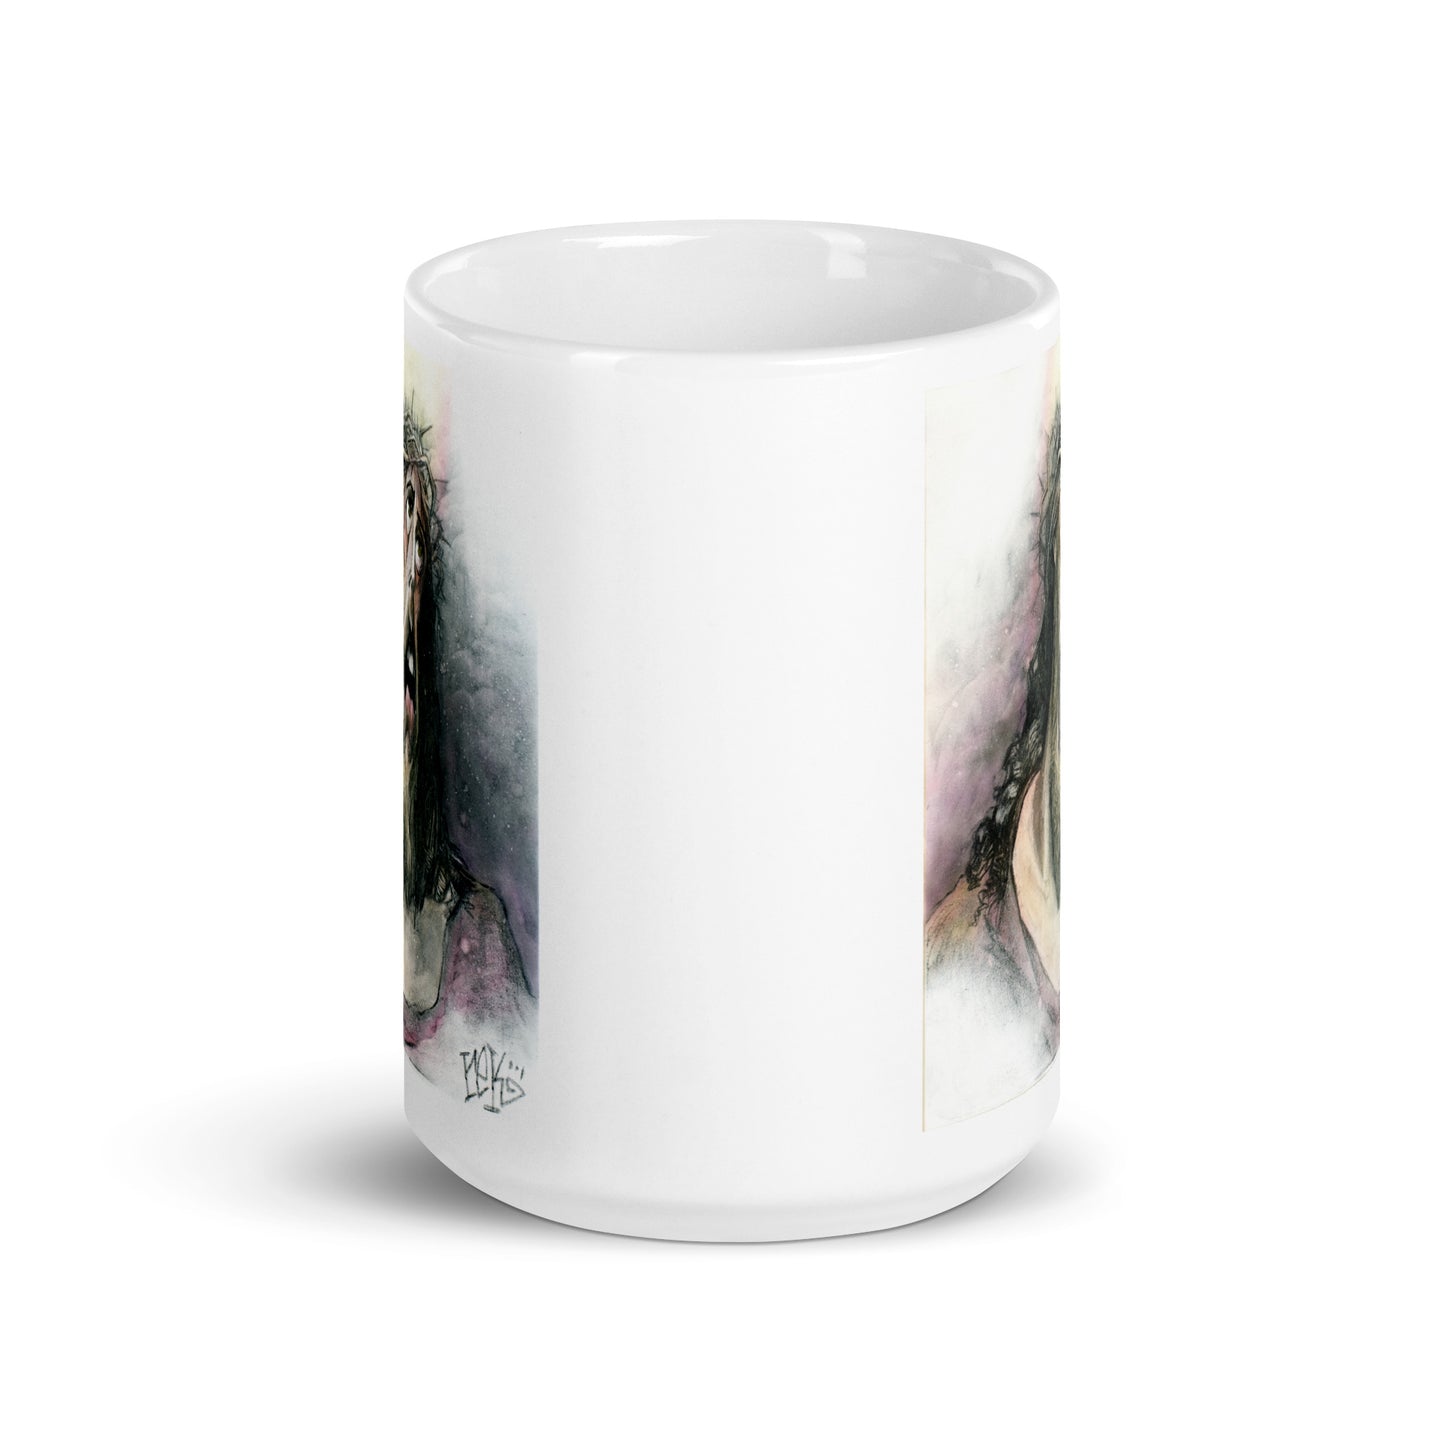 Xtortion - White glossy mug by RICK BALDWIN